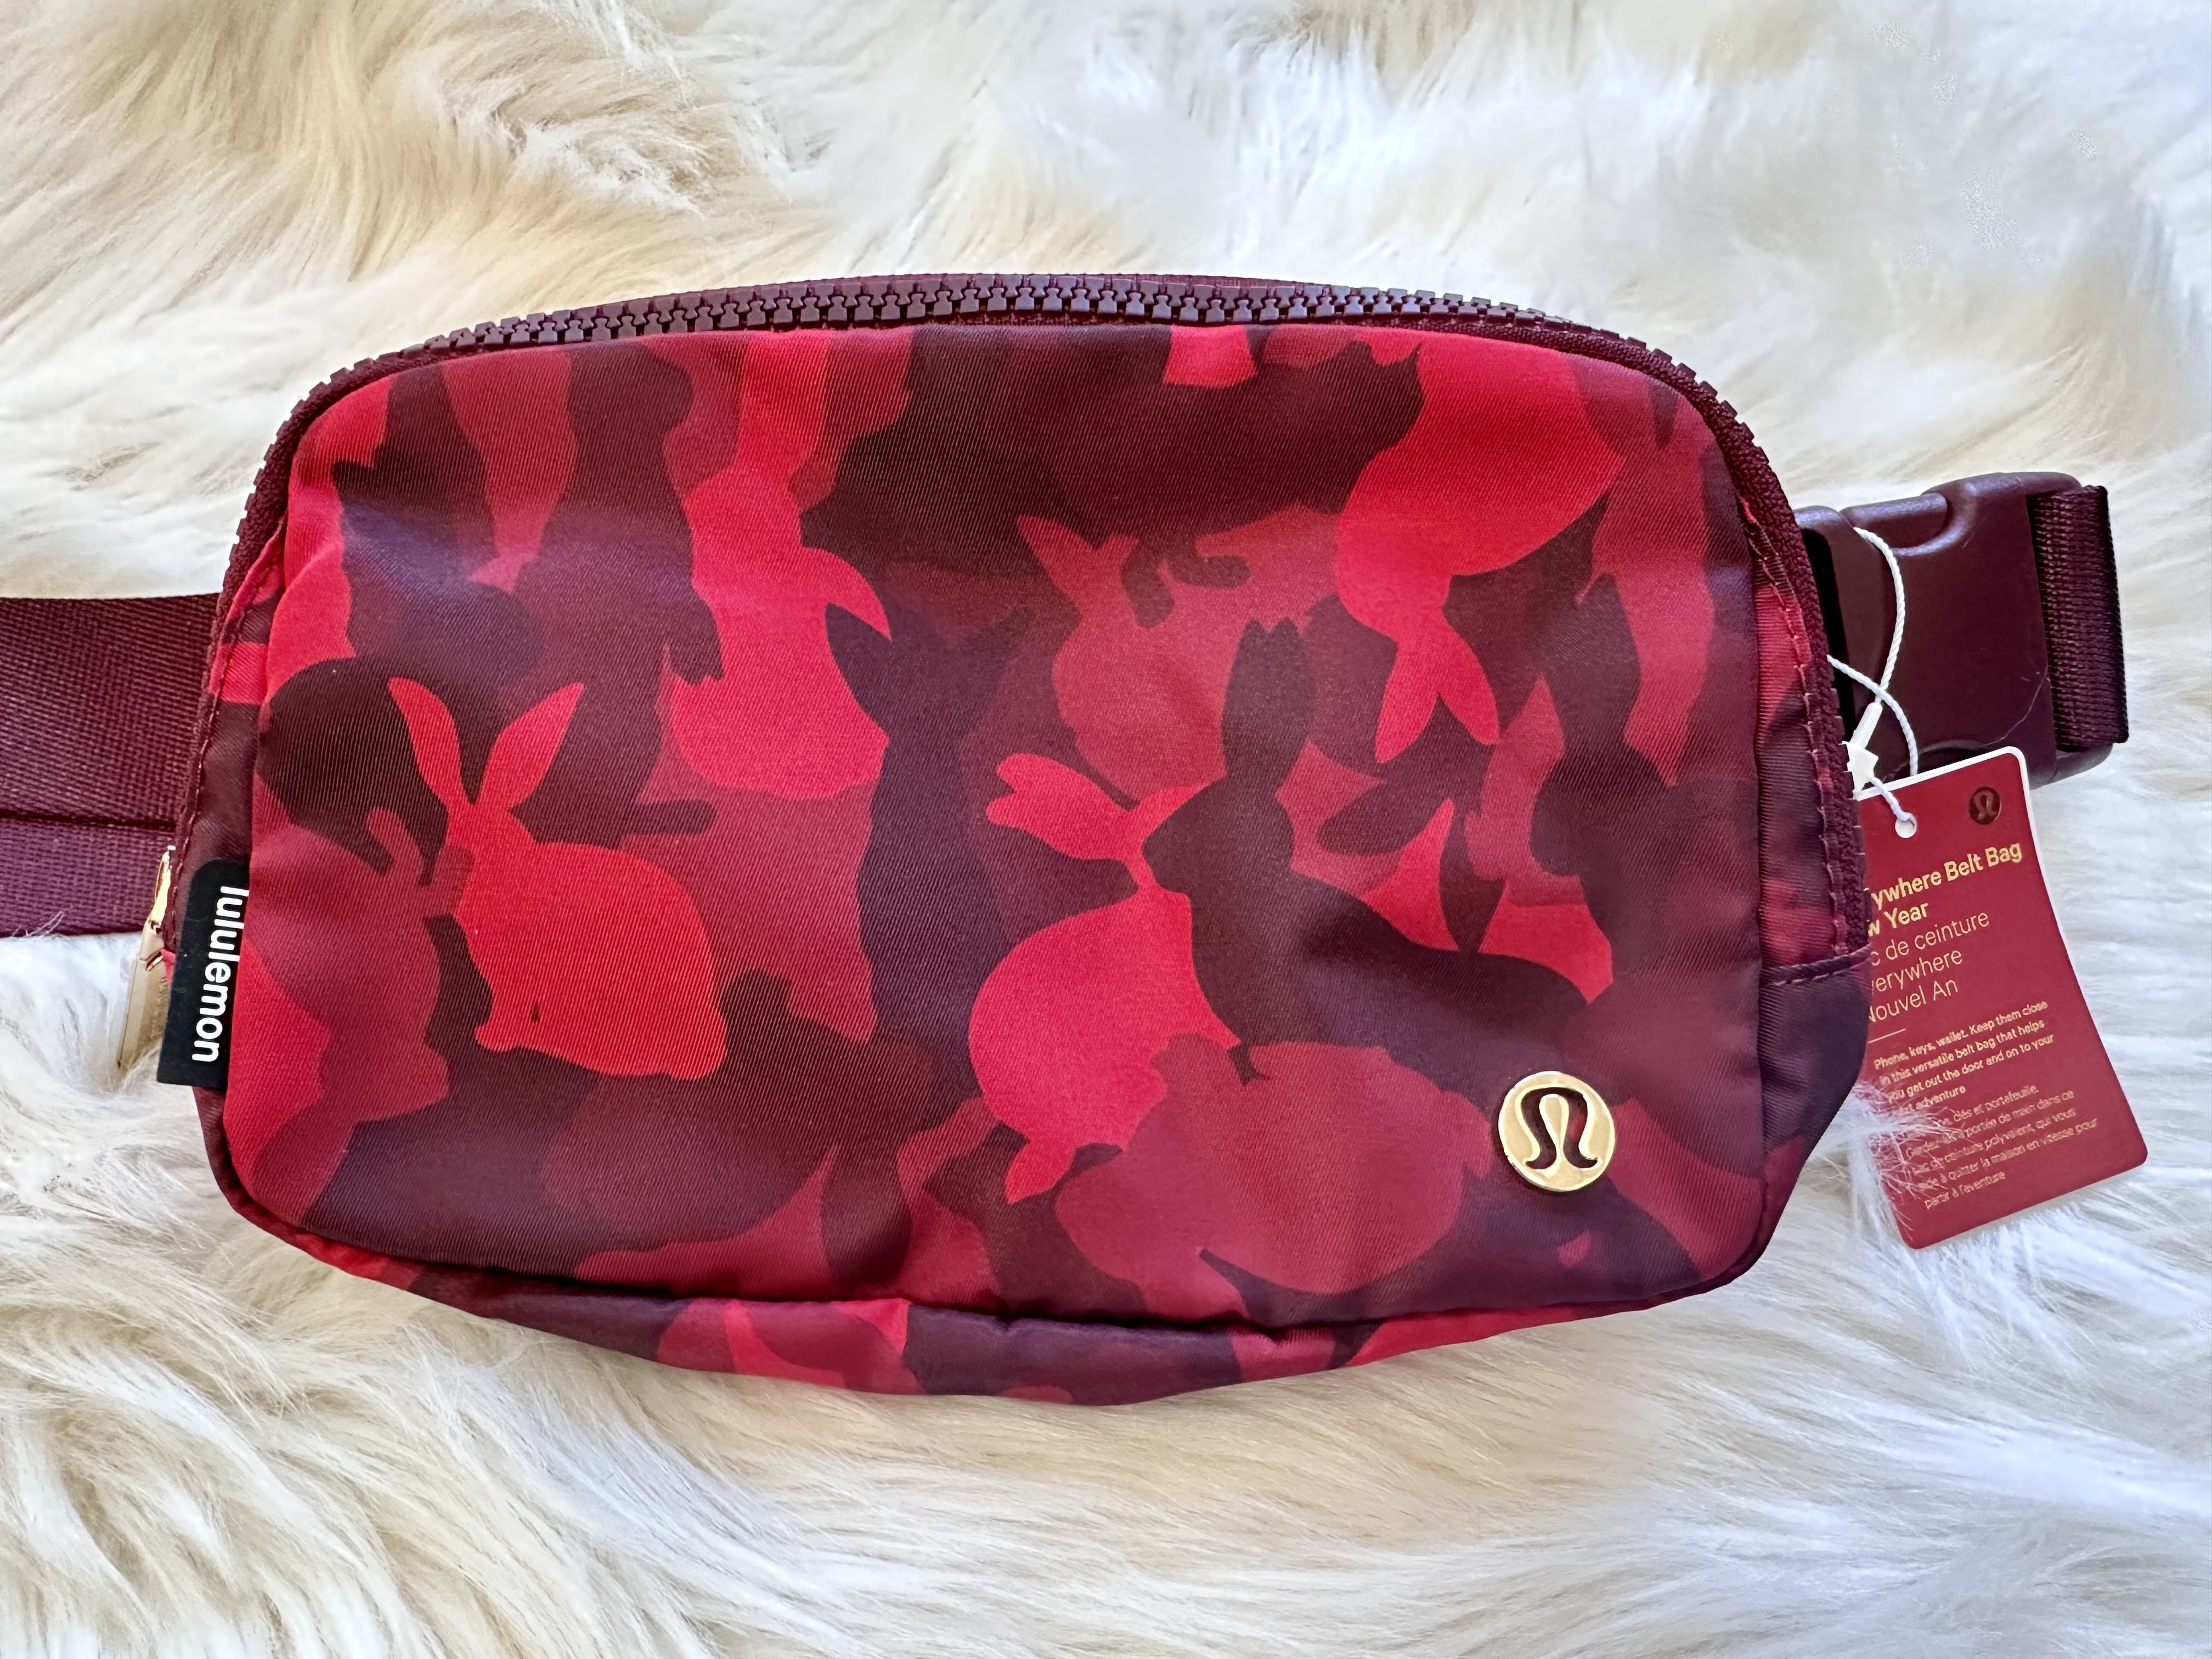 Lululemon red new year Belt Bag - Women's handbags